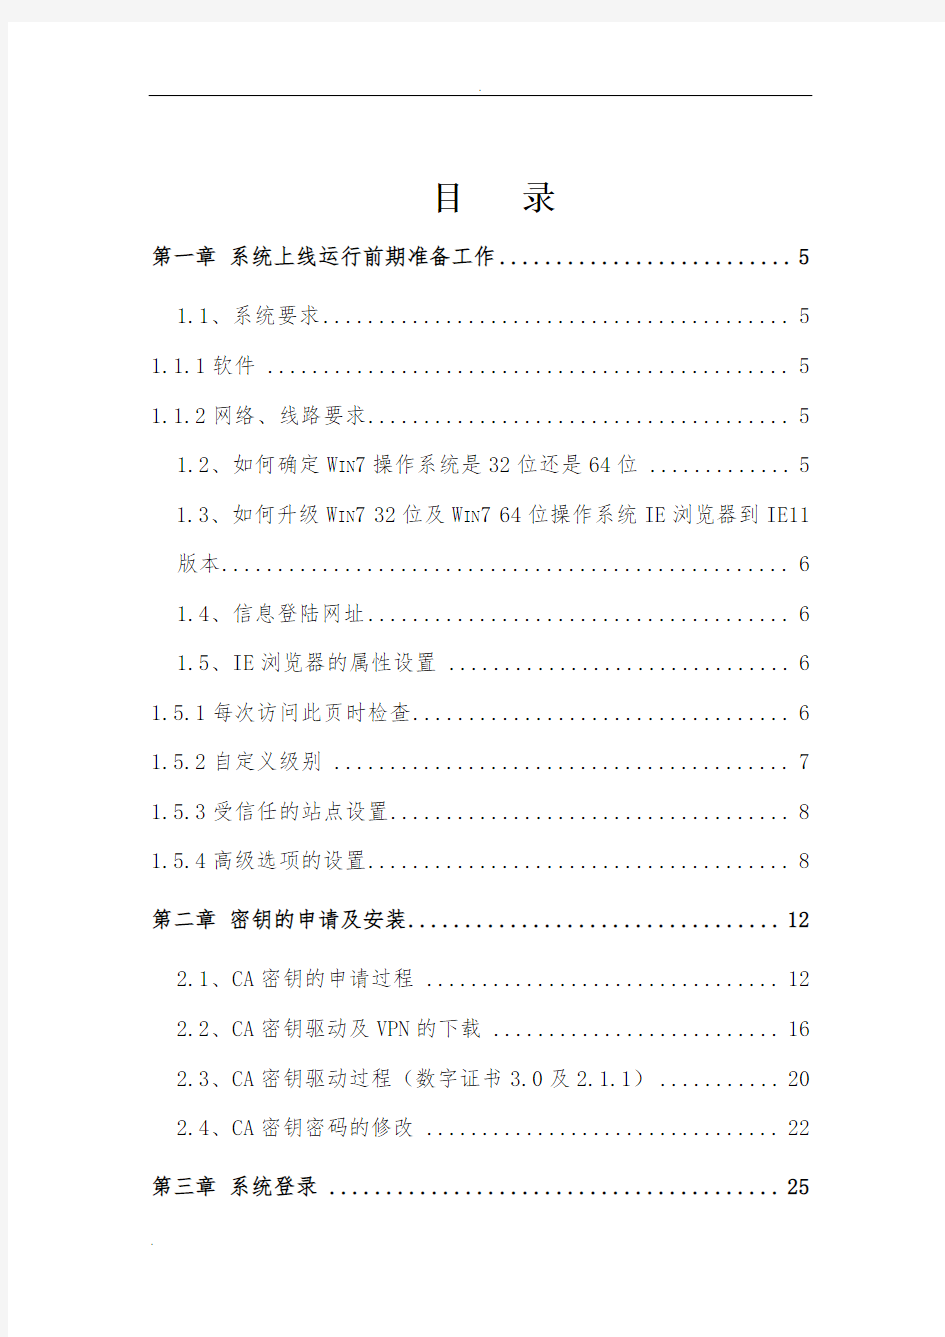 黑龙江省机关事业单位工资管理信息系统操作手册